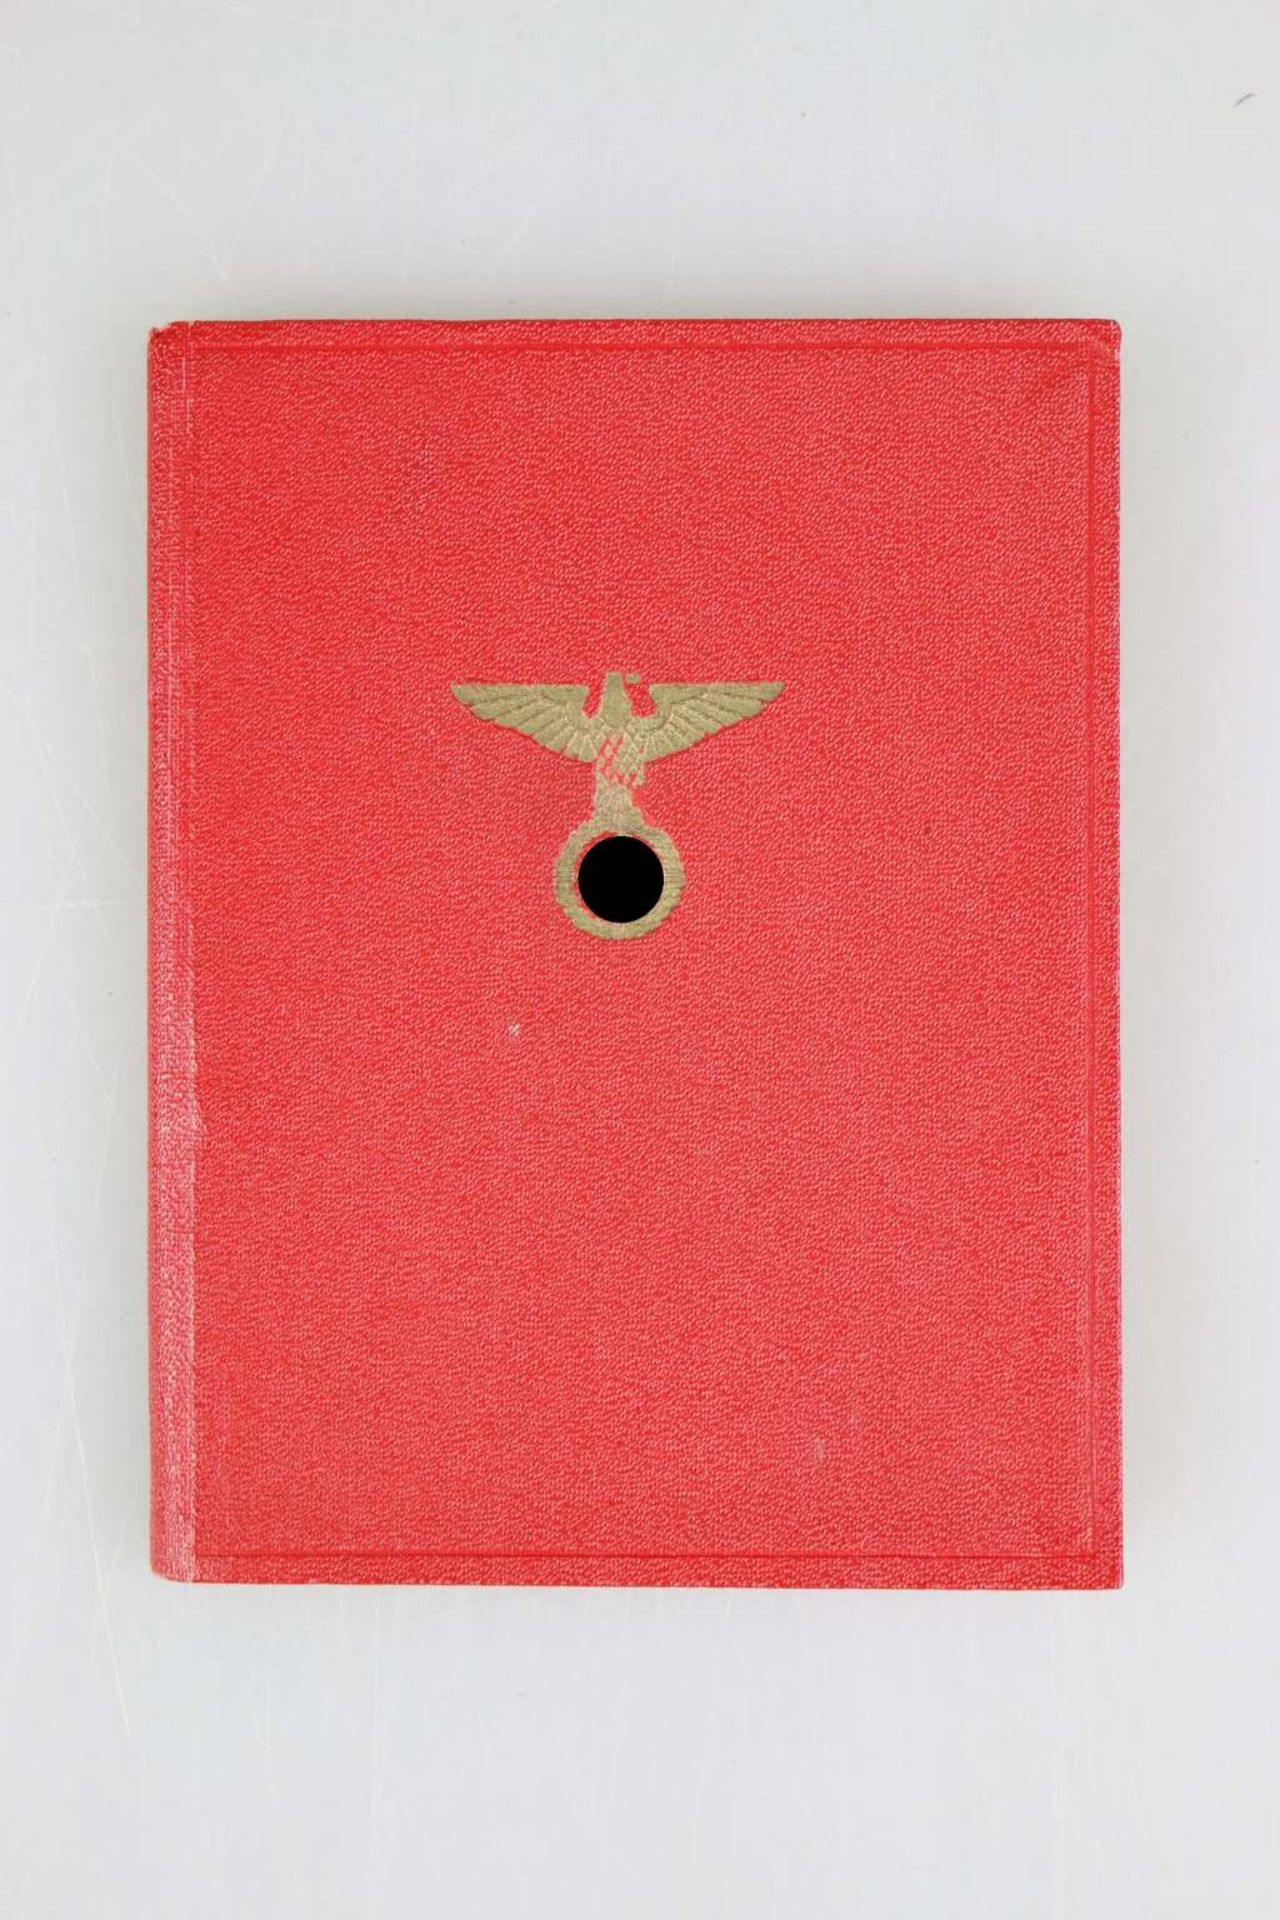 NSDAP - Mitgliedsbuch Nr. 2275351.